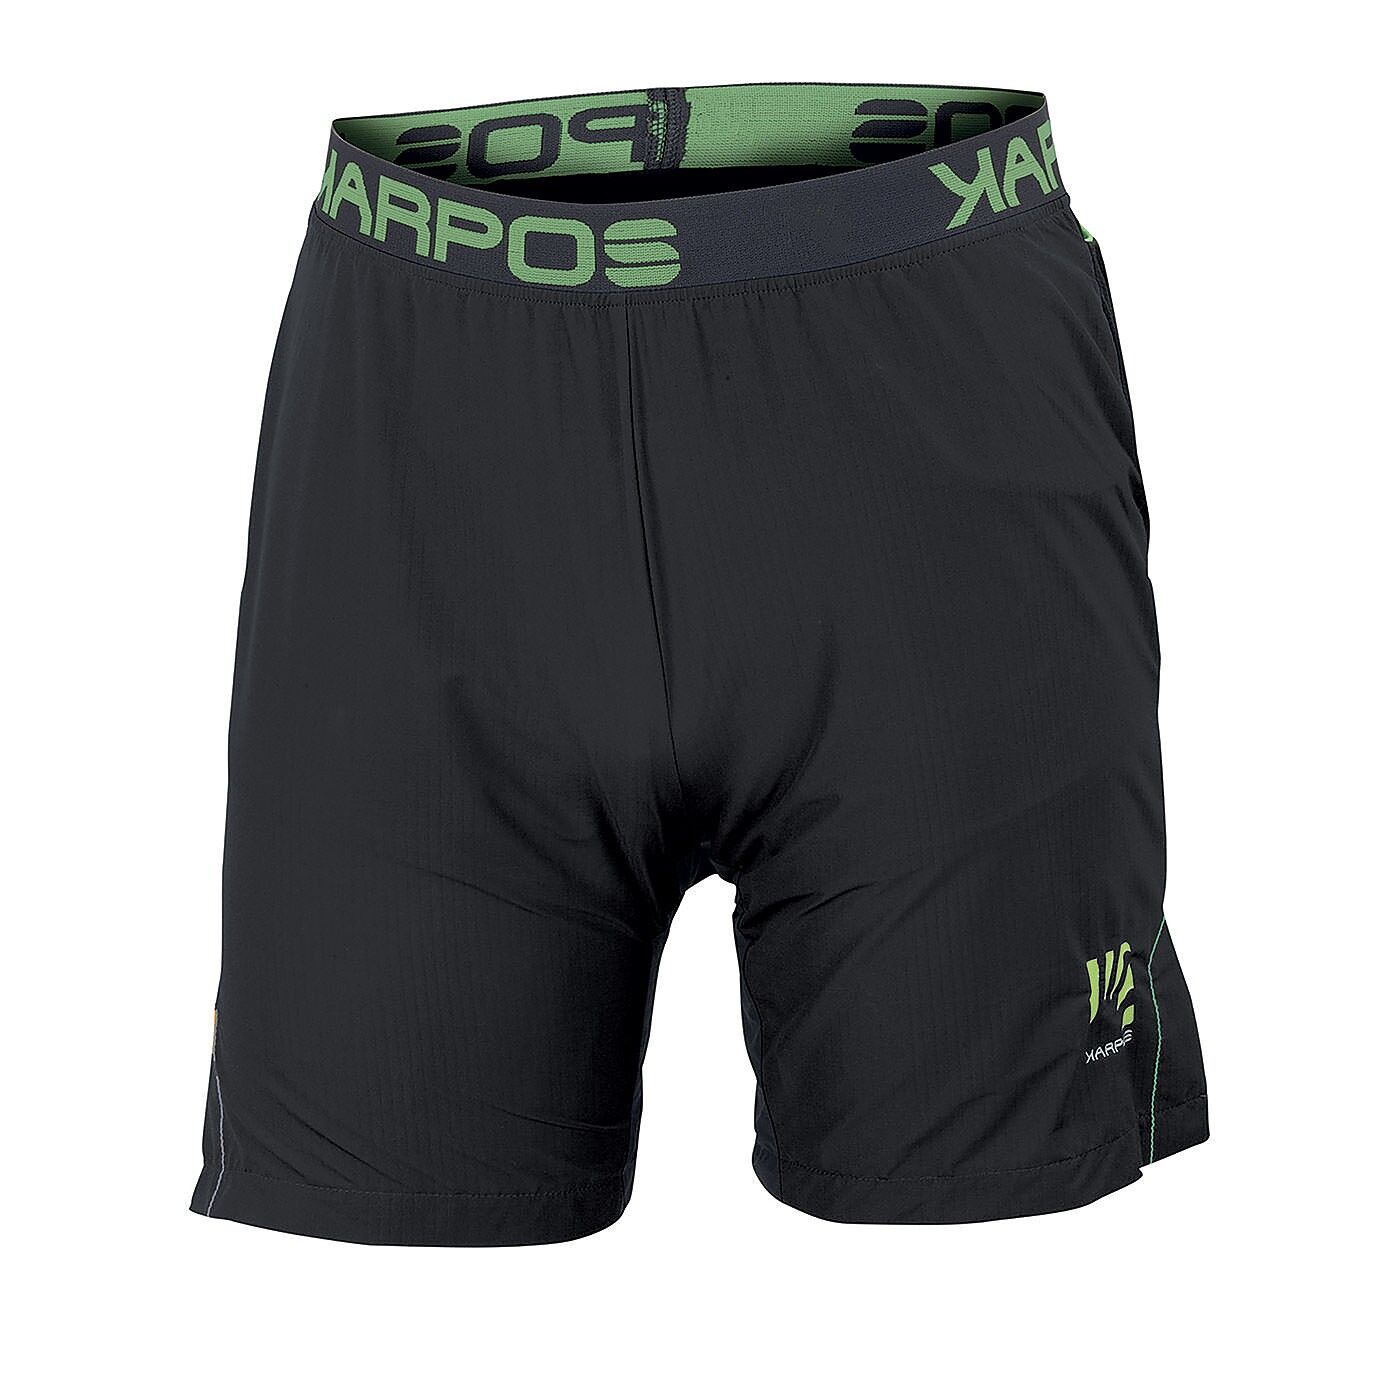 Karpos Fast Short - Running shorts - Men's